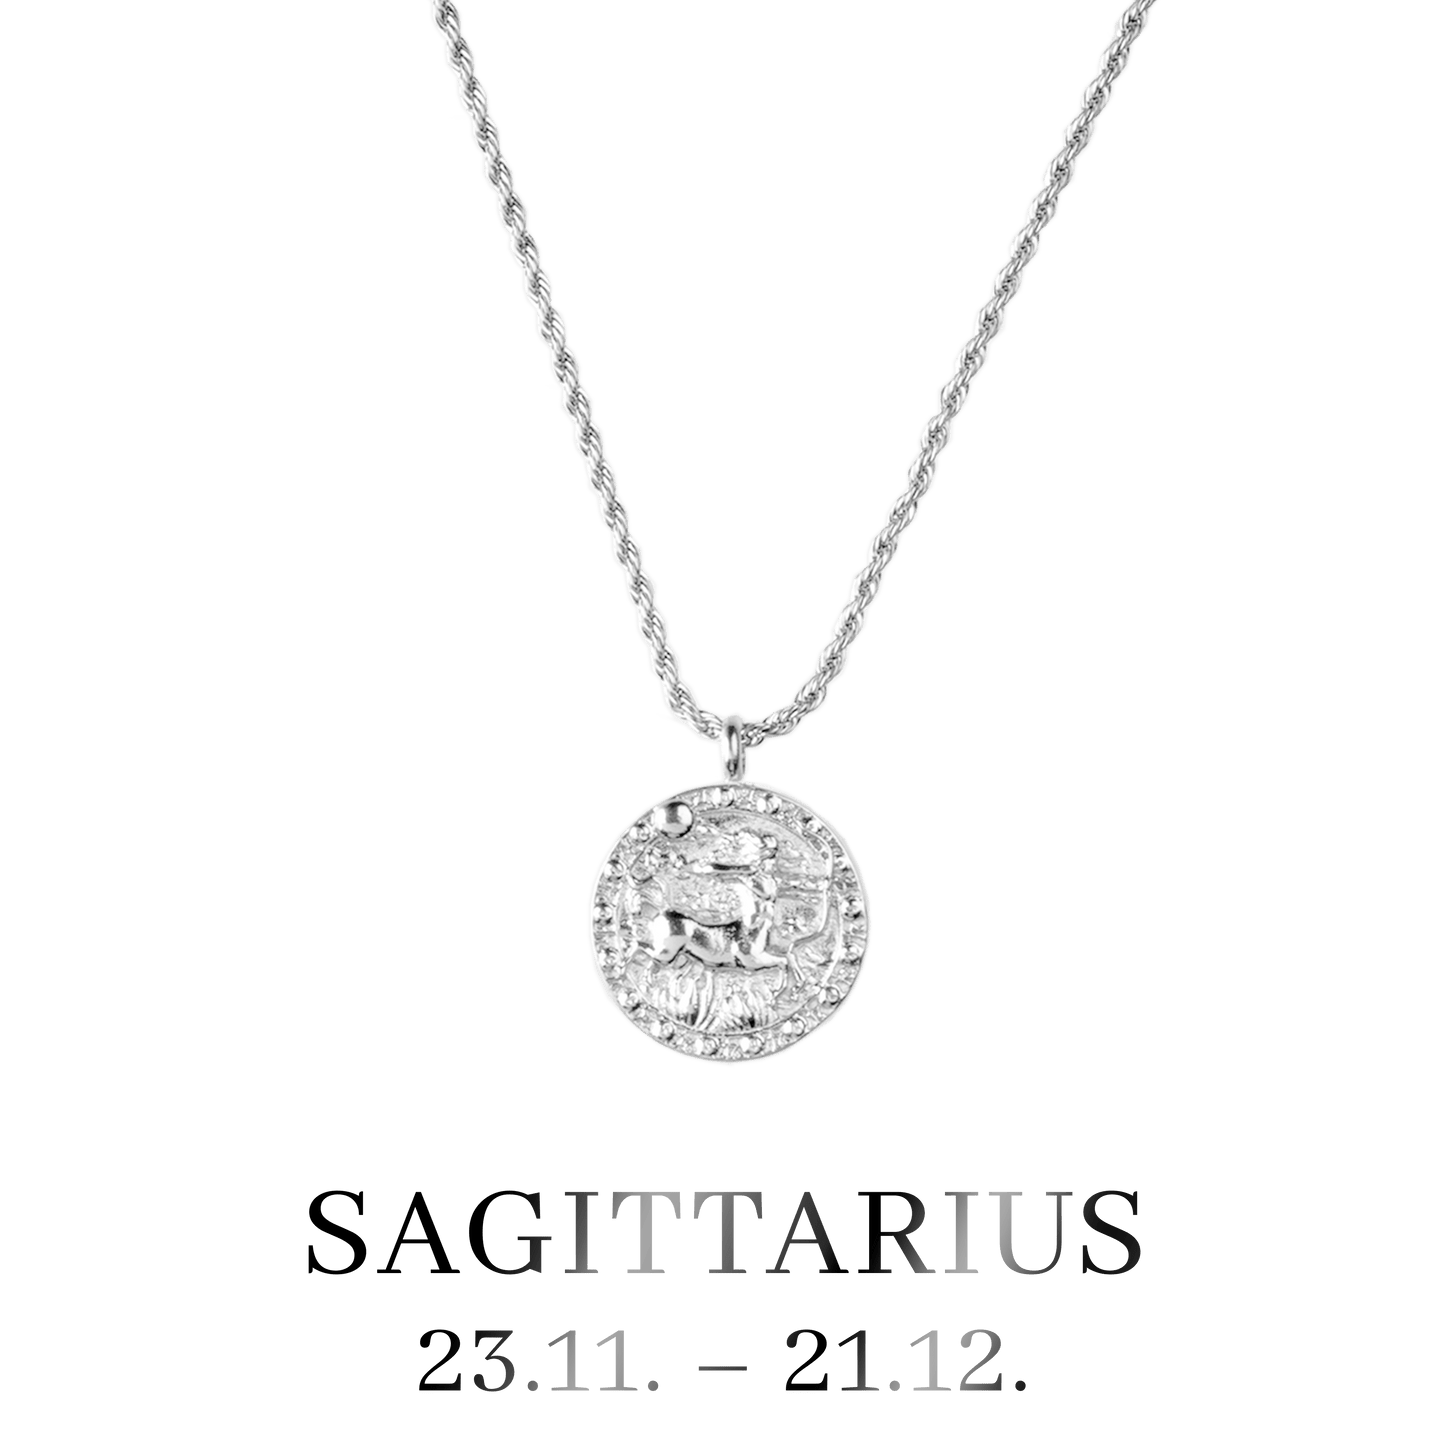 Sagittarius Necklace Silver